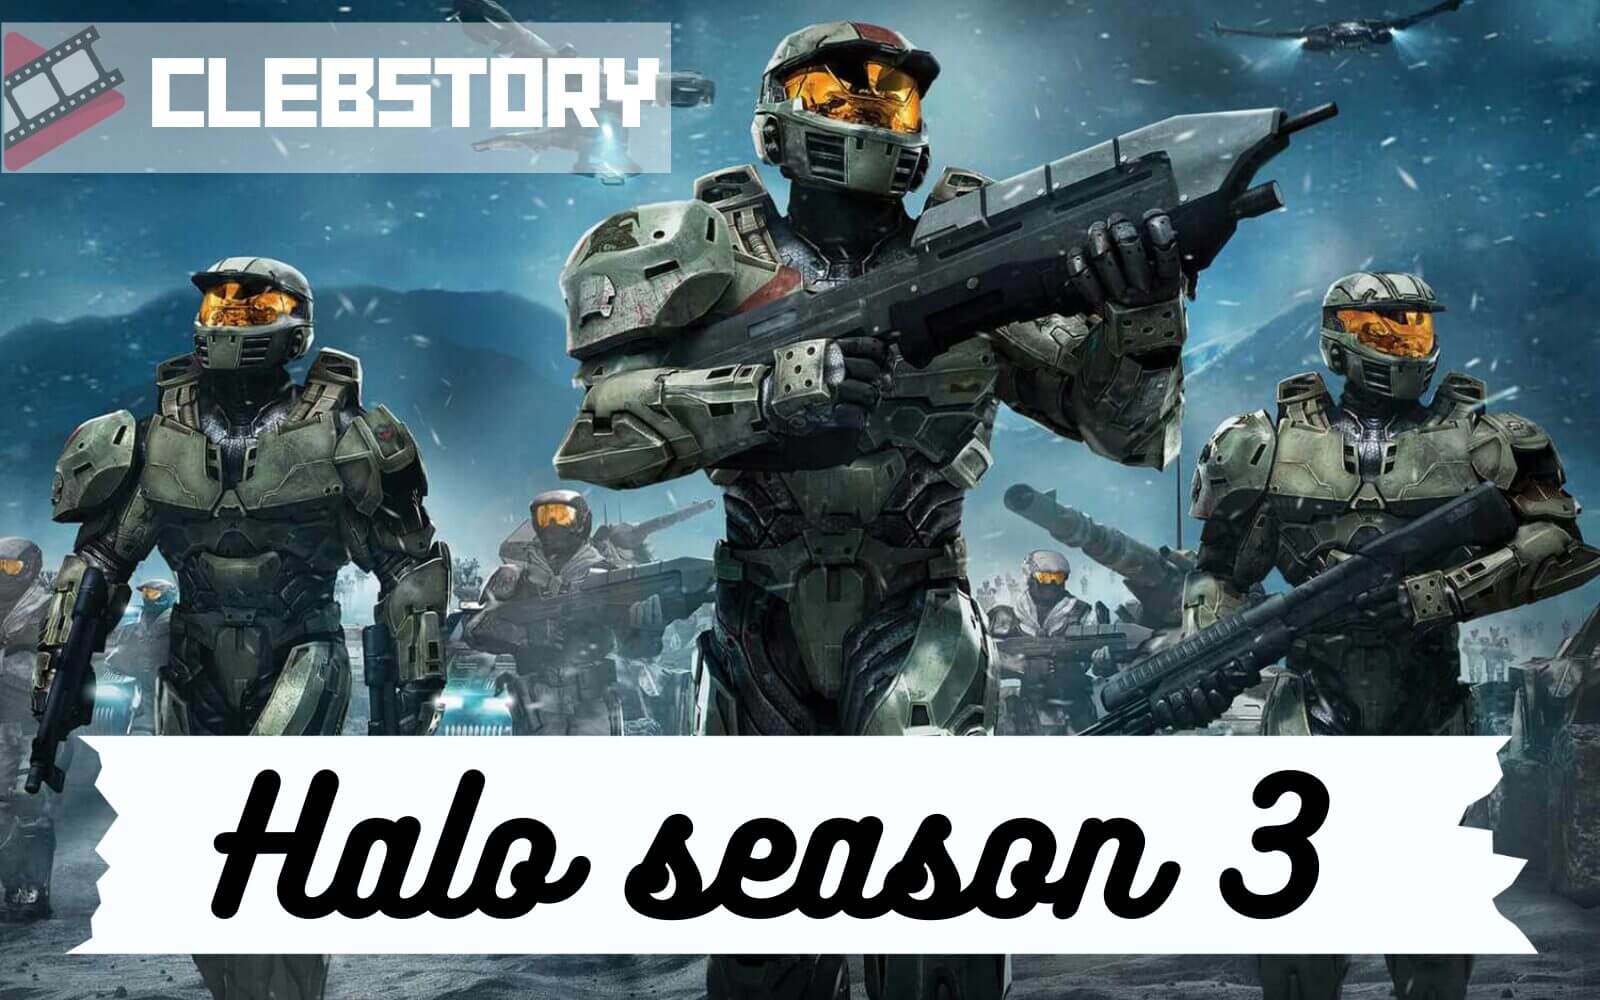 Halo season 3 release date